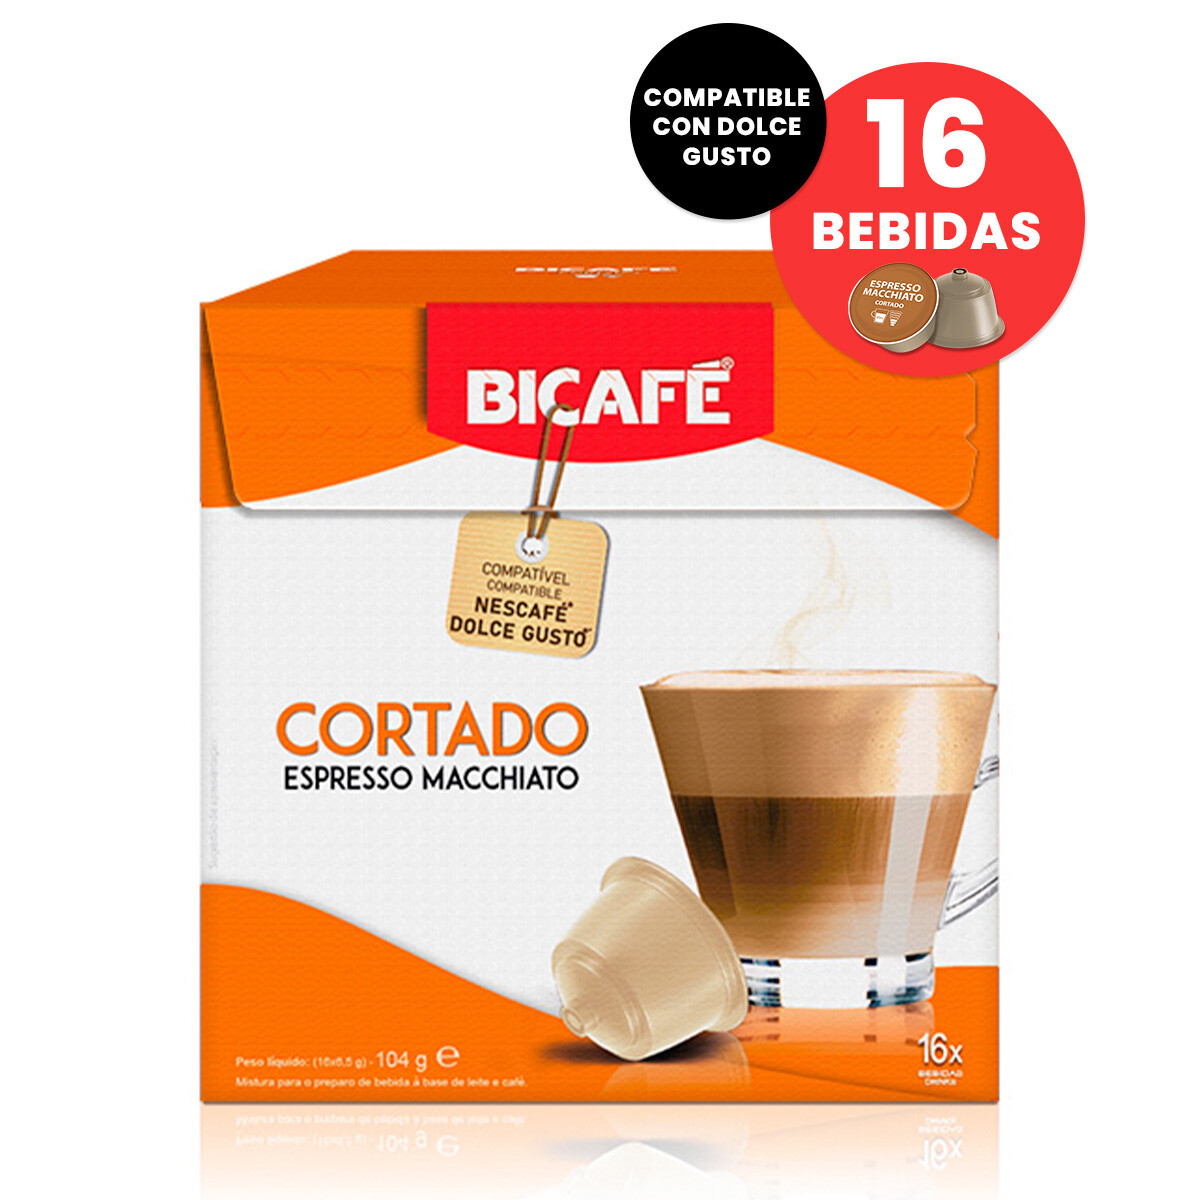 Capsulas Bicafe Cortado Compatible Dolce Gusto sin Azucar X16 Bebidas - 001 